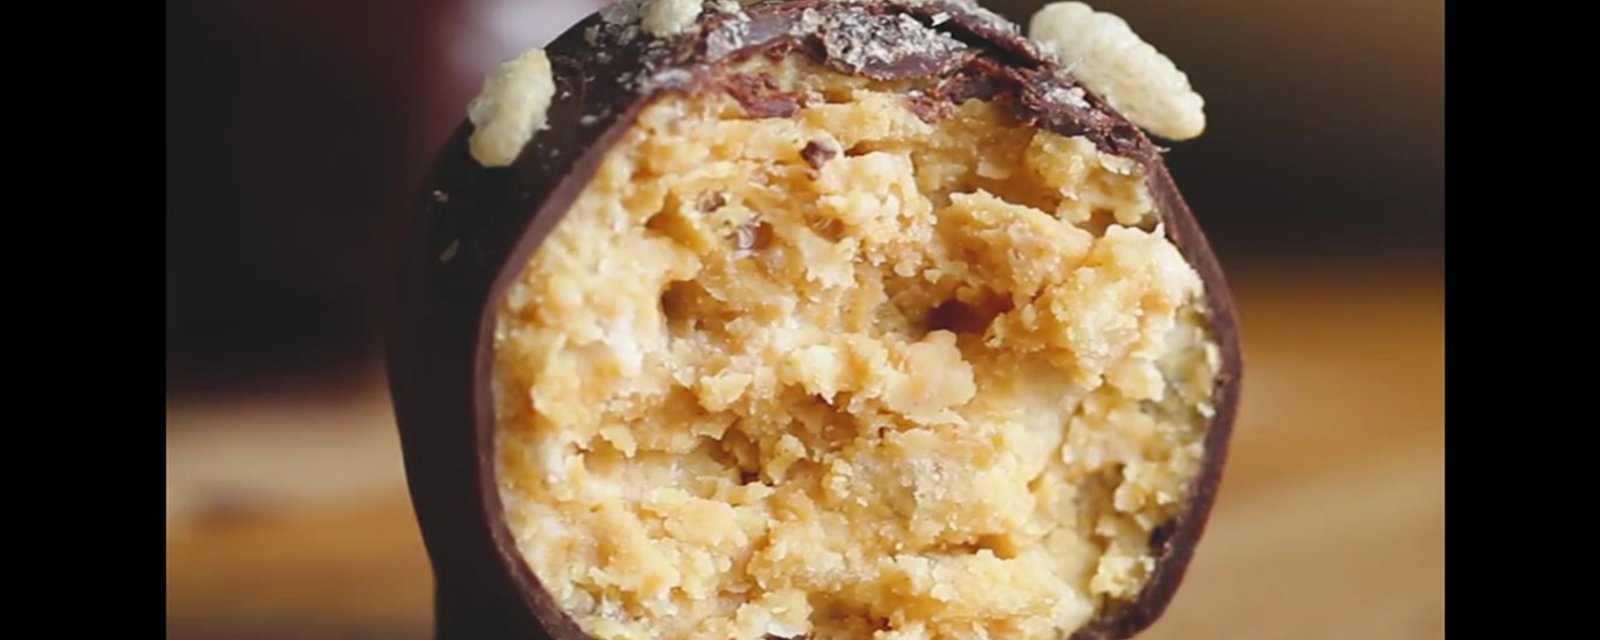 Avec ces 5 ingrédients, préparez-vous une gâterie au beurre d'arachides tout à fait savoureuse et SANS CUISSON!